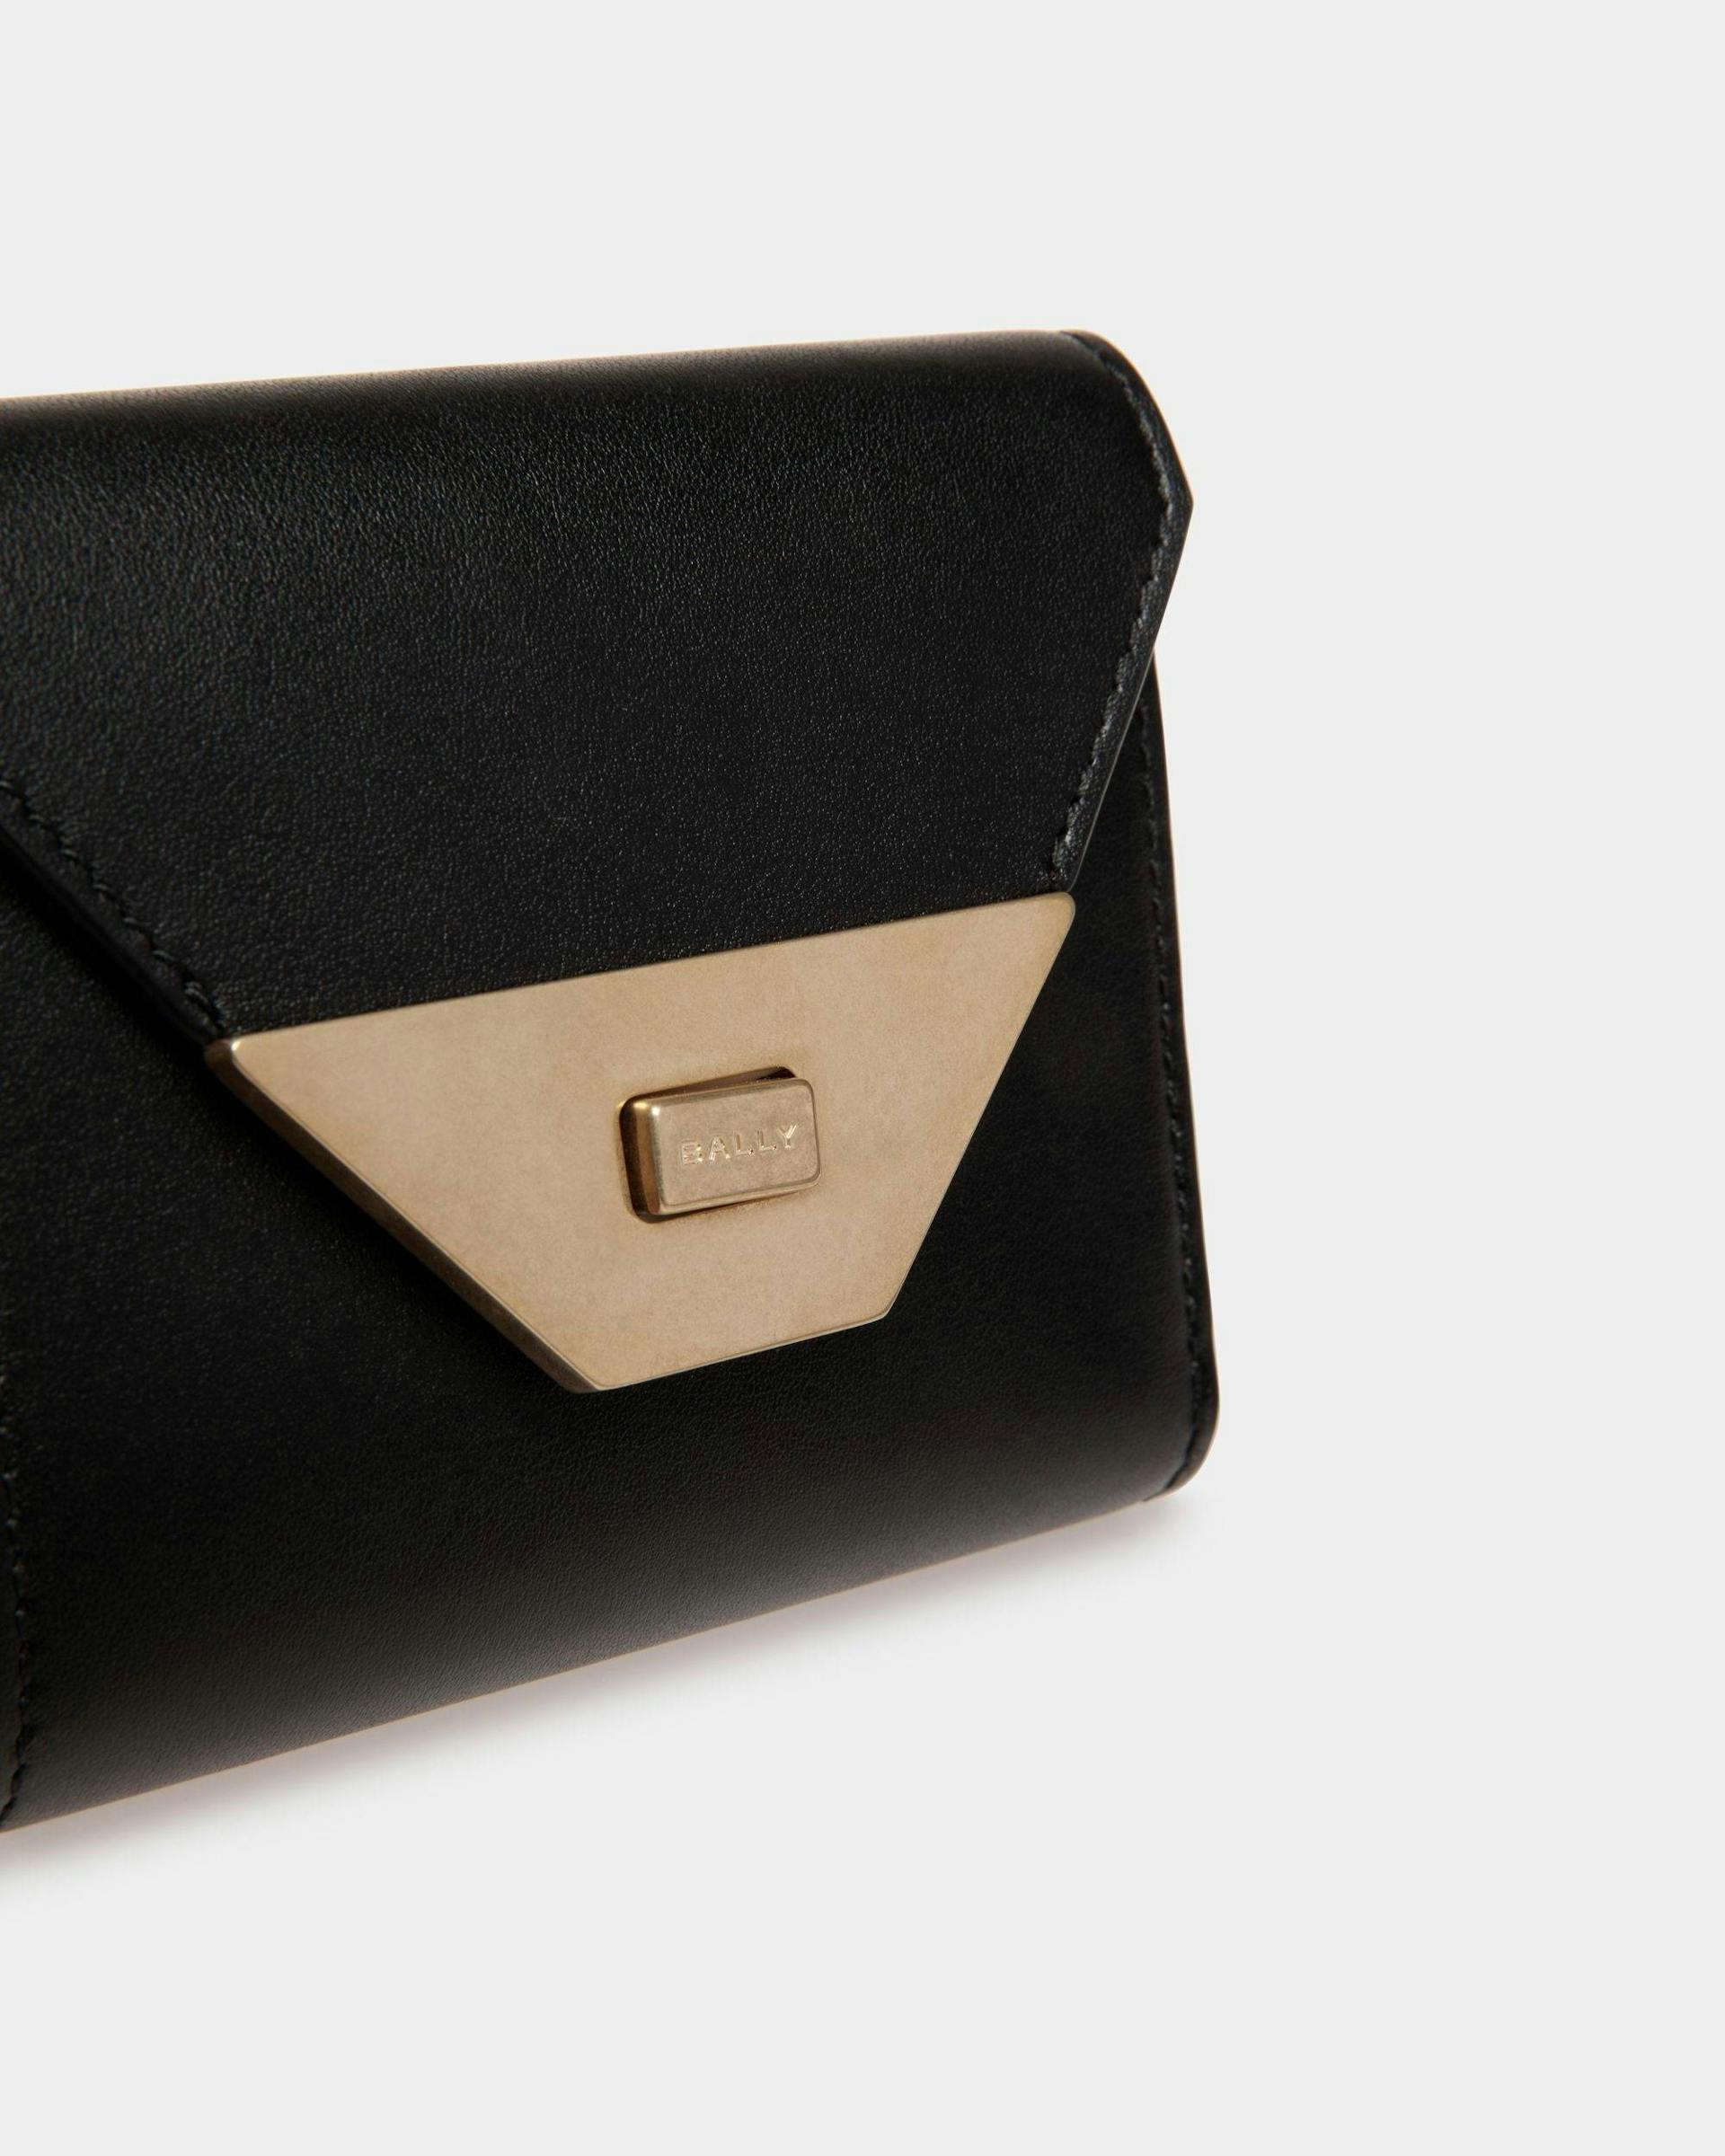 Women's Tilt Wallet In Black Leather | Bally | Still Life Detail